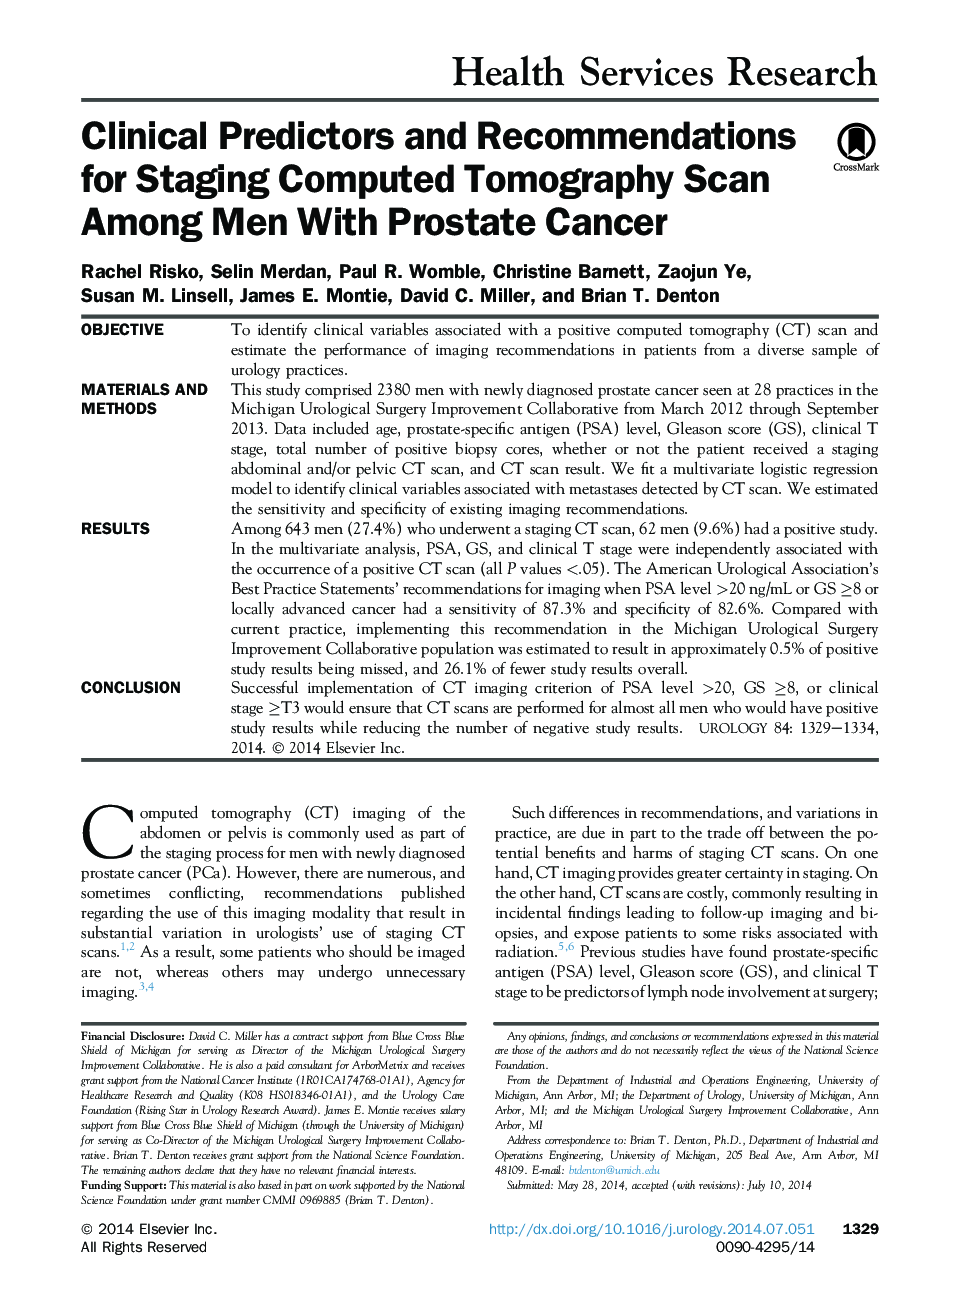 پیش بینی های بالینی و توصیه هایی برای تشخیص اسکن توموگرافی کامپیوتری در میان مردان مبتلا به سرطان پروستات 